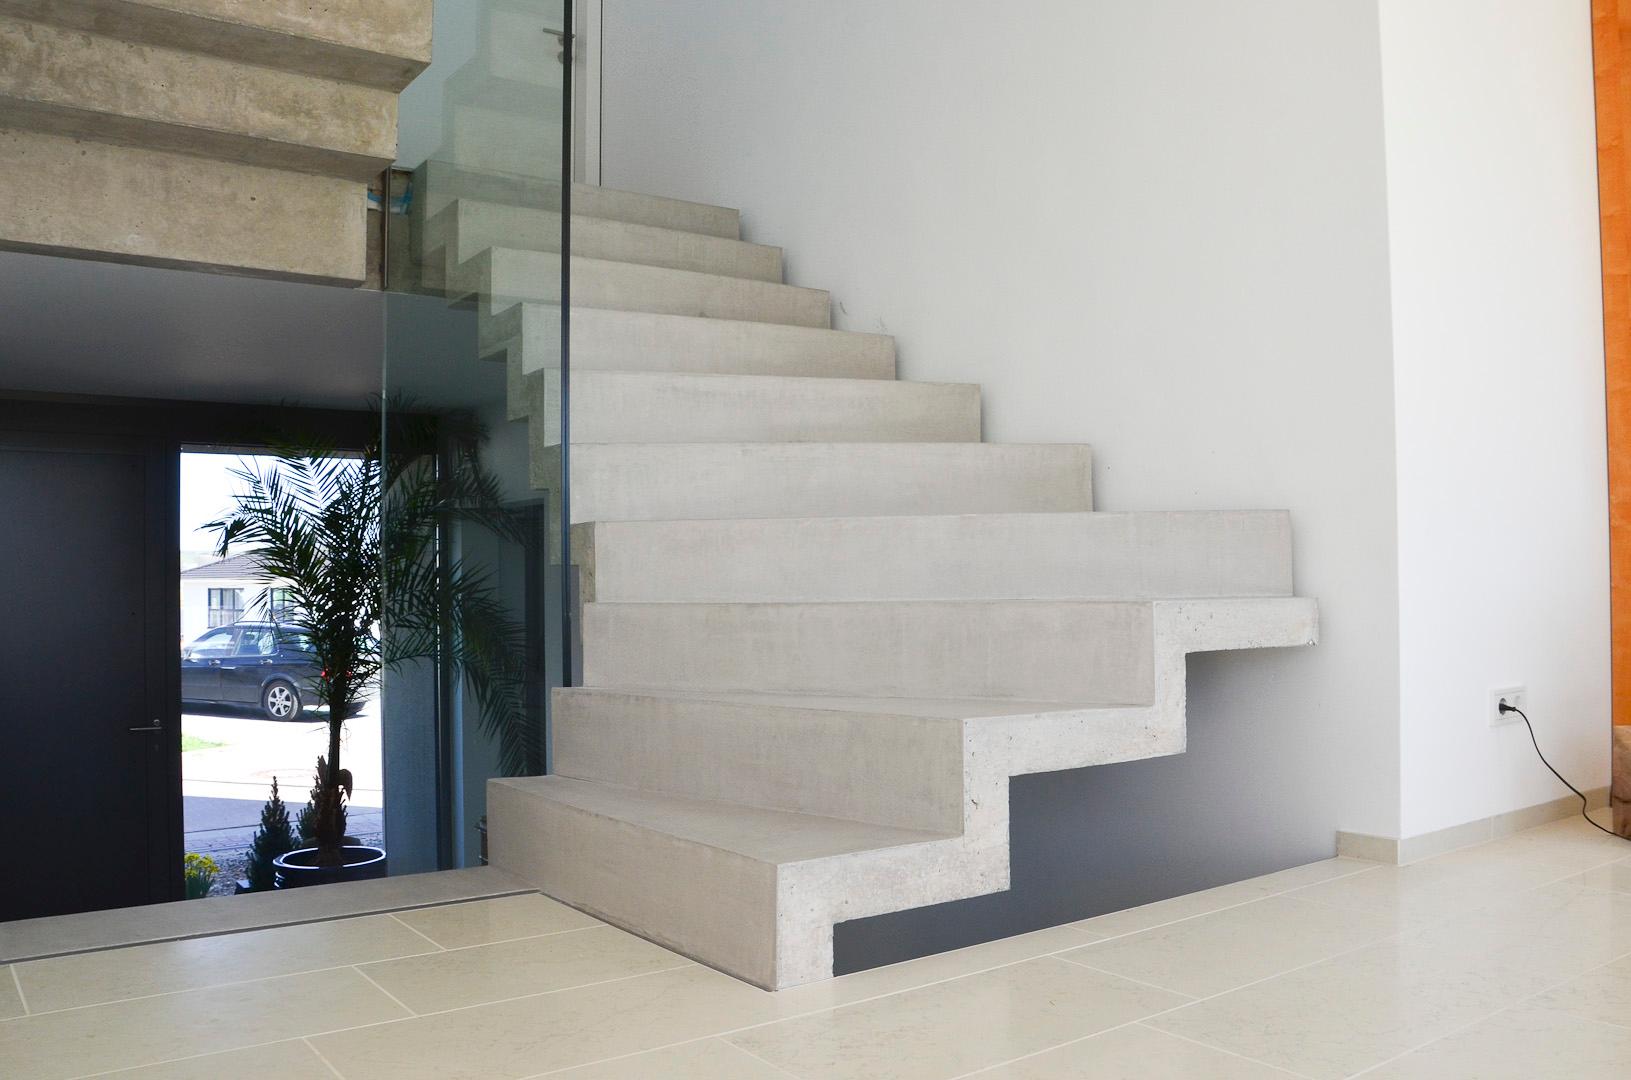 Beschichten einer Betontreppe #treppenaufgang #betontreppe #freischwebendetreppe ©BesserBauen